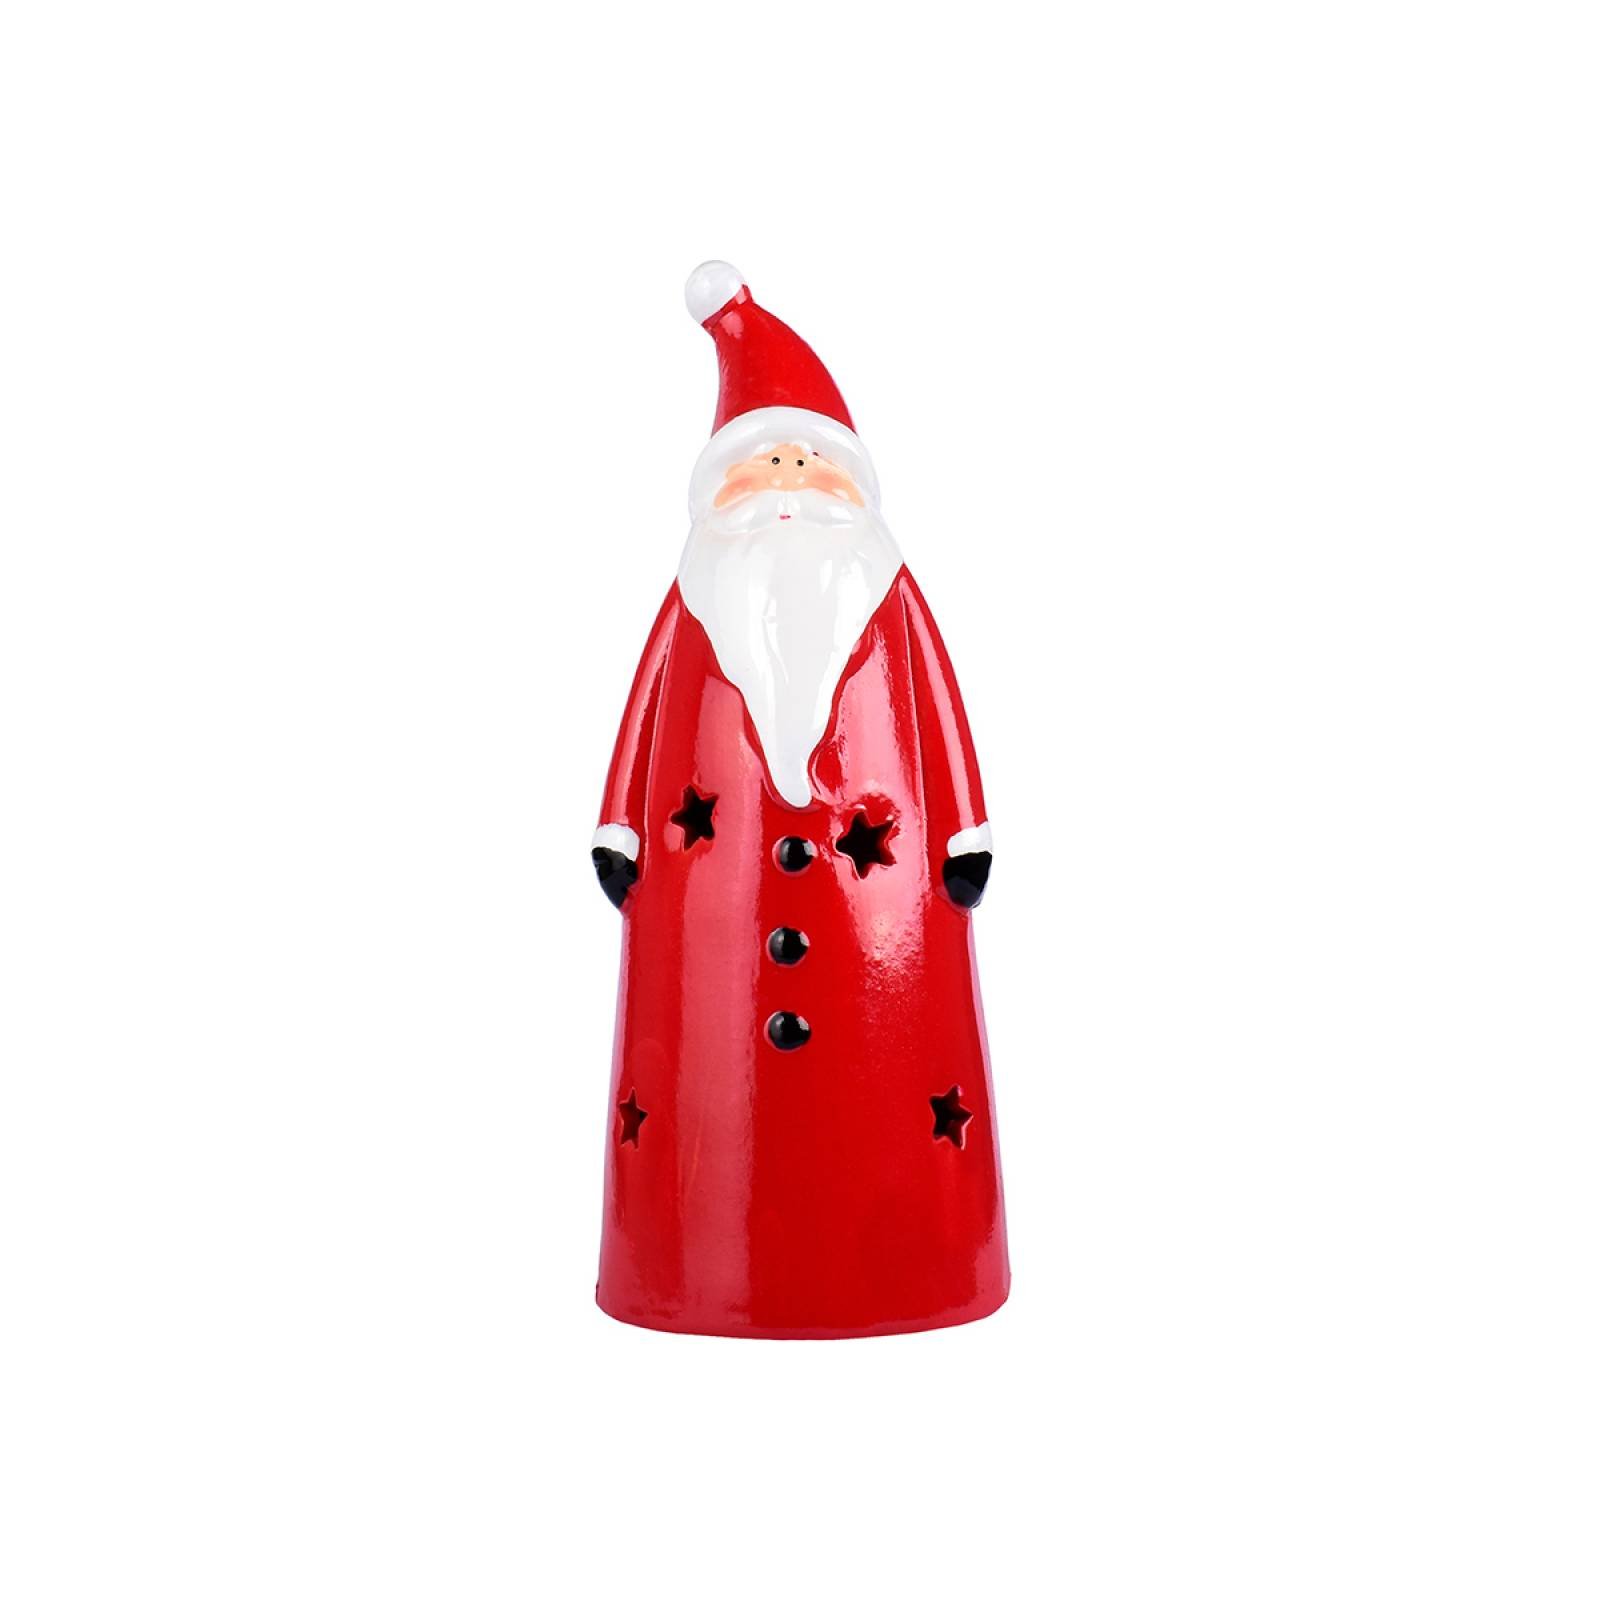 Figura Decorativa con forma de Santa Claus con Luz LED